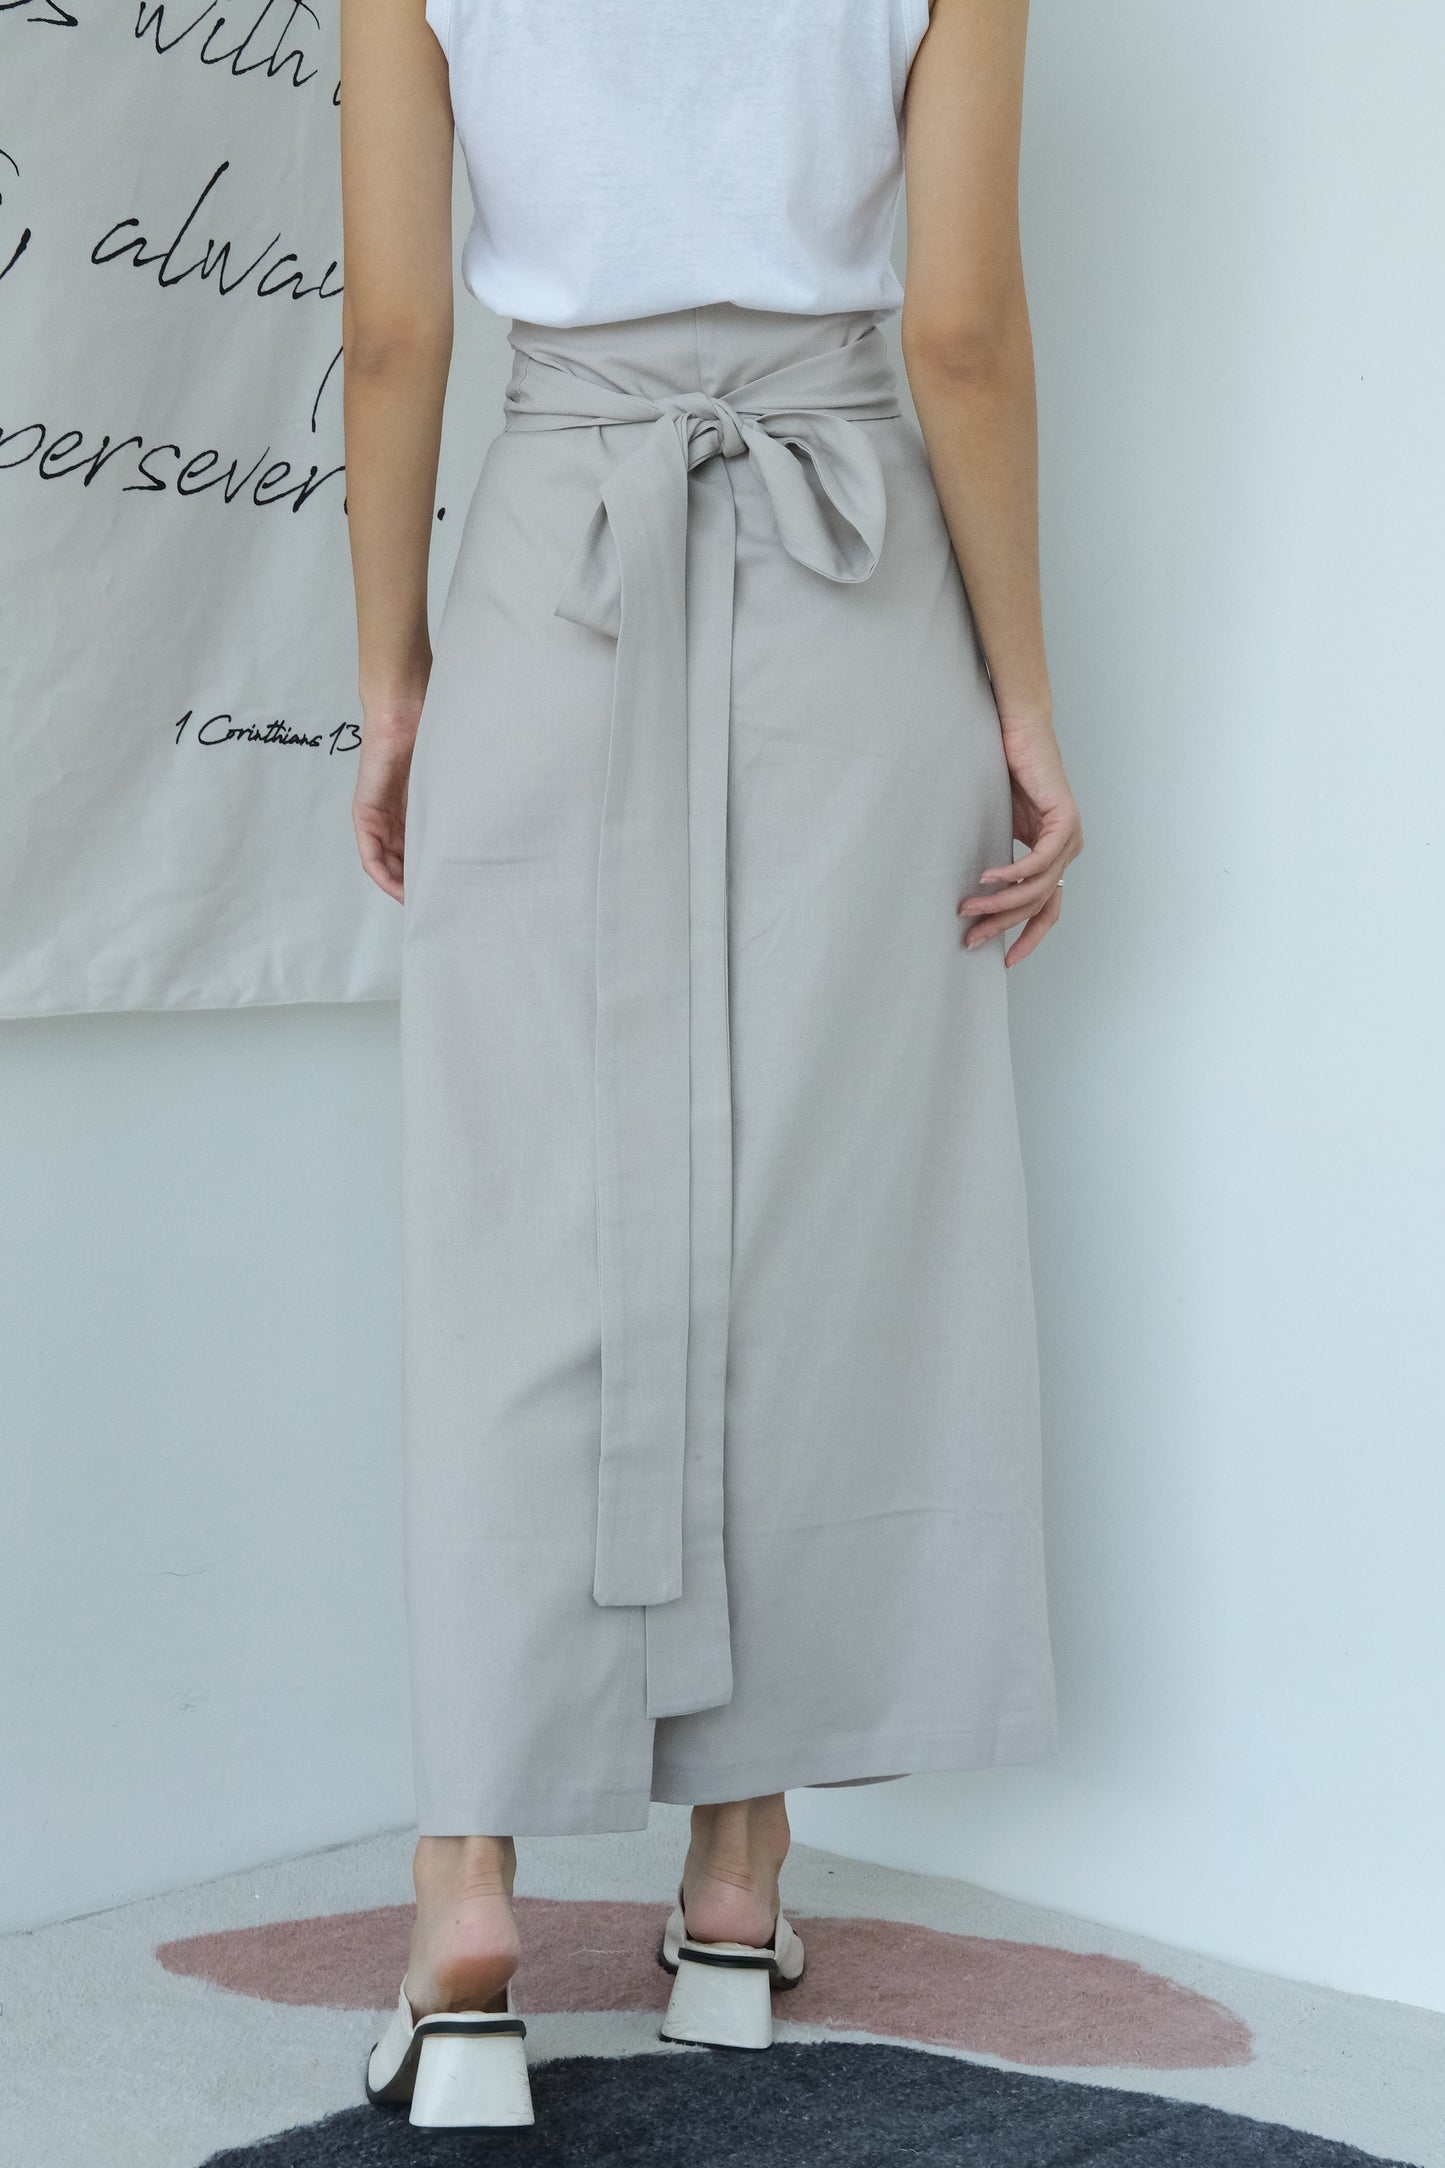 Cross-tie multi-wearing a-line skirt in light grey